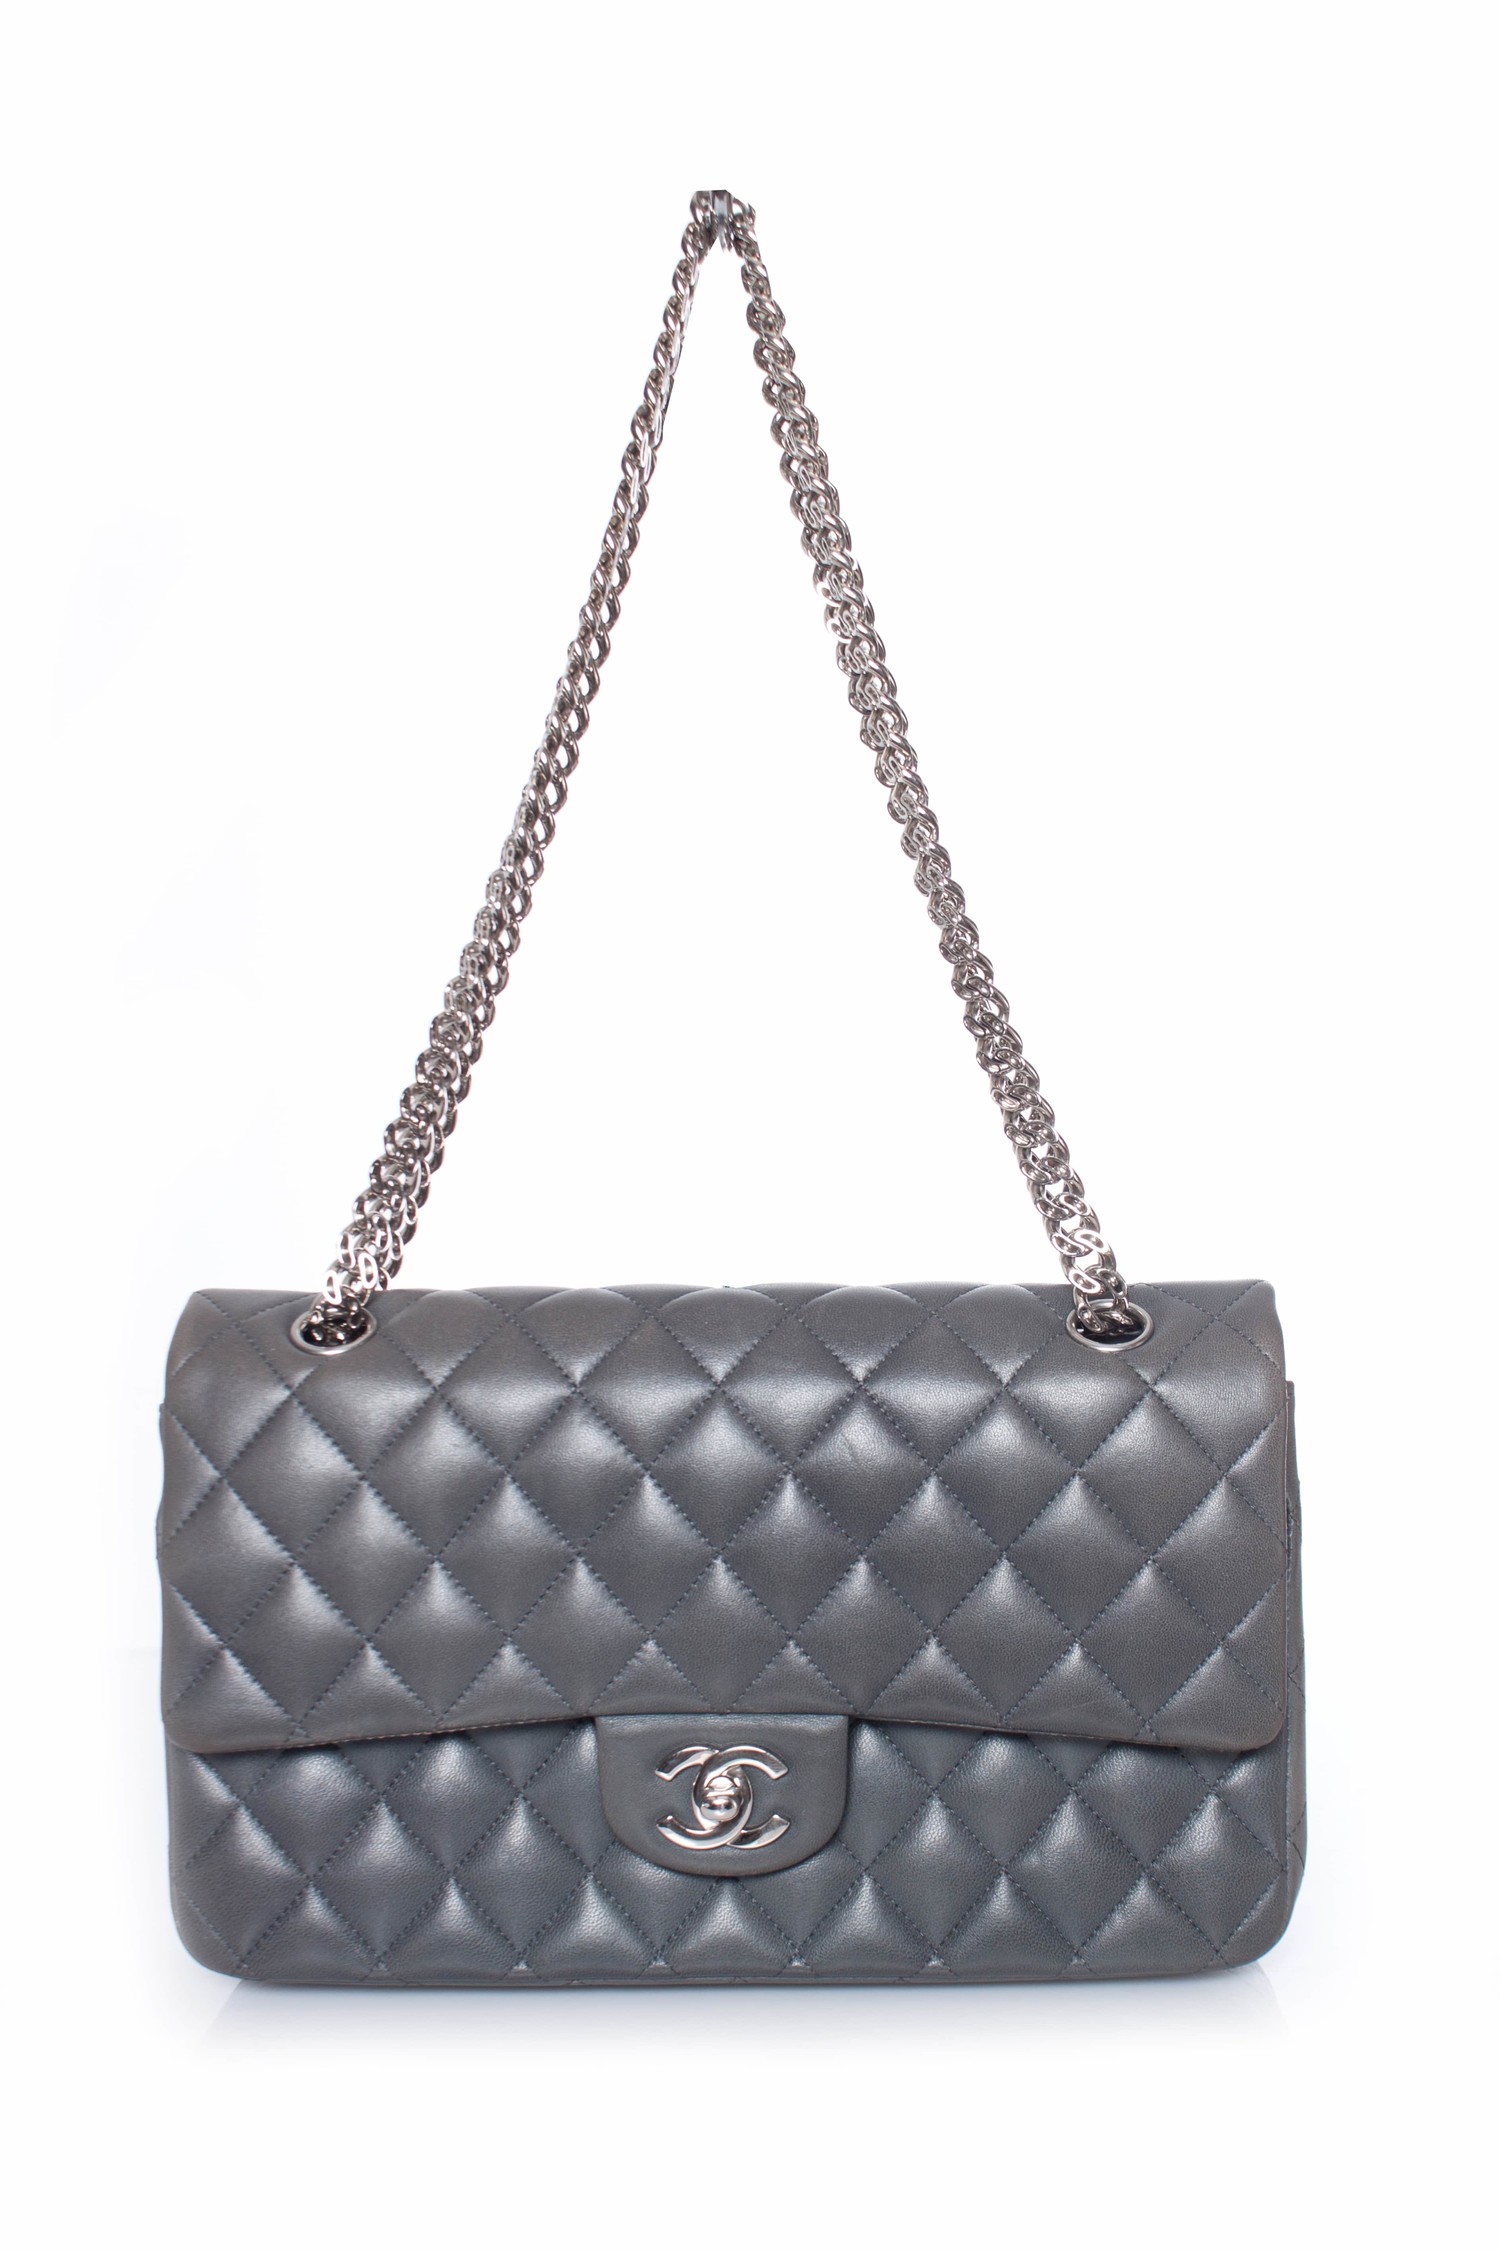 Bạn có thể đựng gì trong một chiếc túi xách nữ Chanel Flap Bag size medium